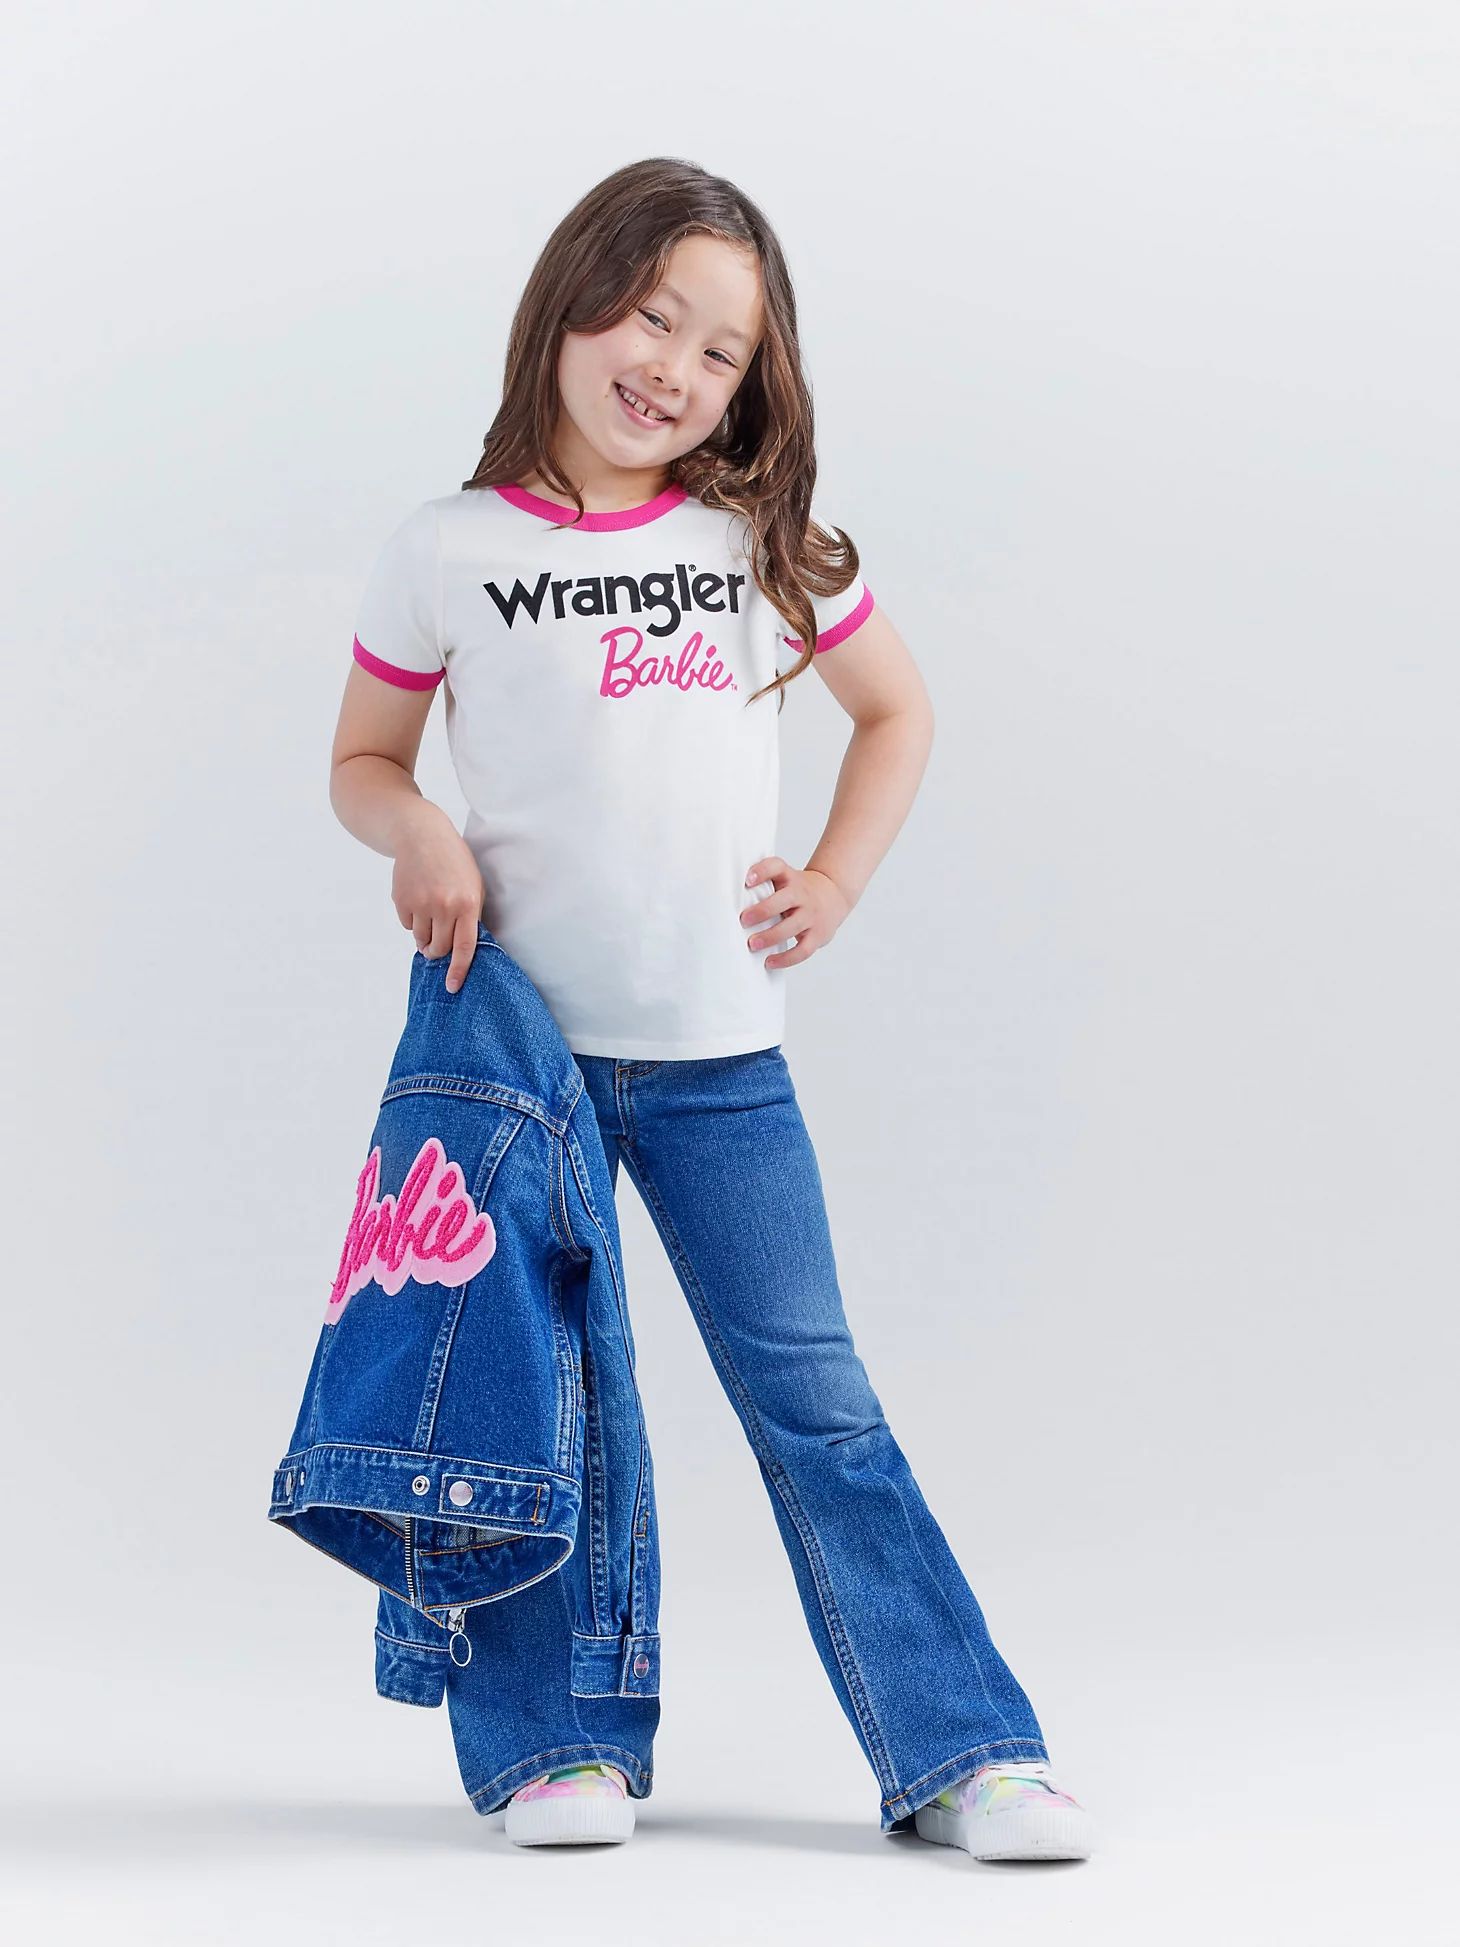 Wrangler x Barbie™ Girl's Logo Ringer Tee in Snow White | Wrangler